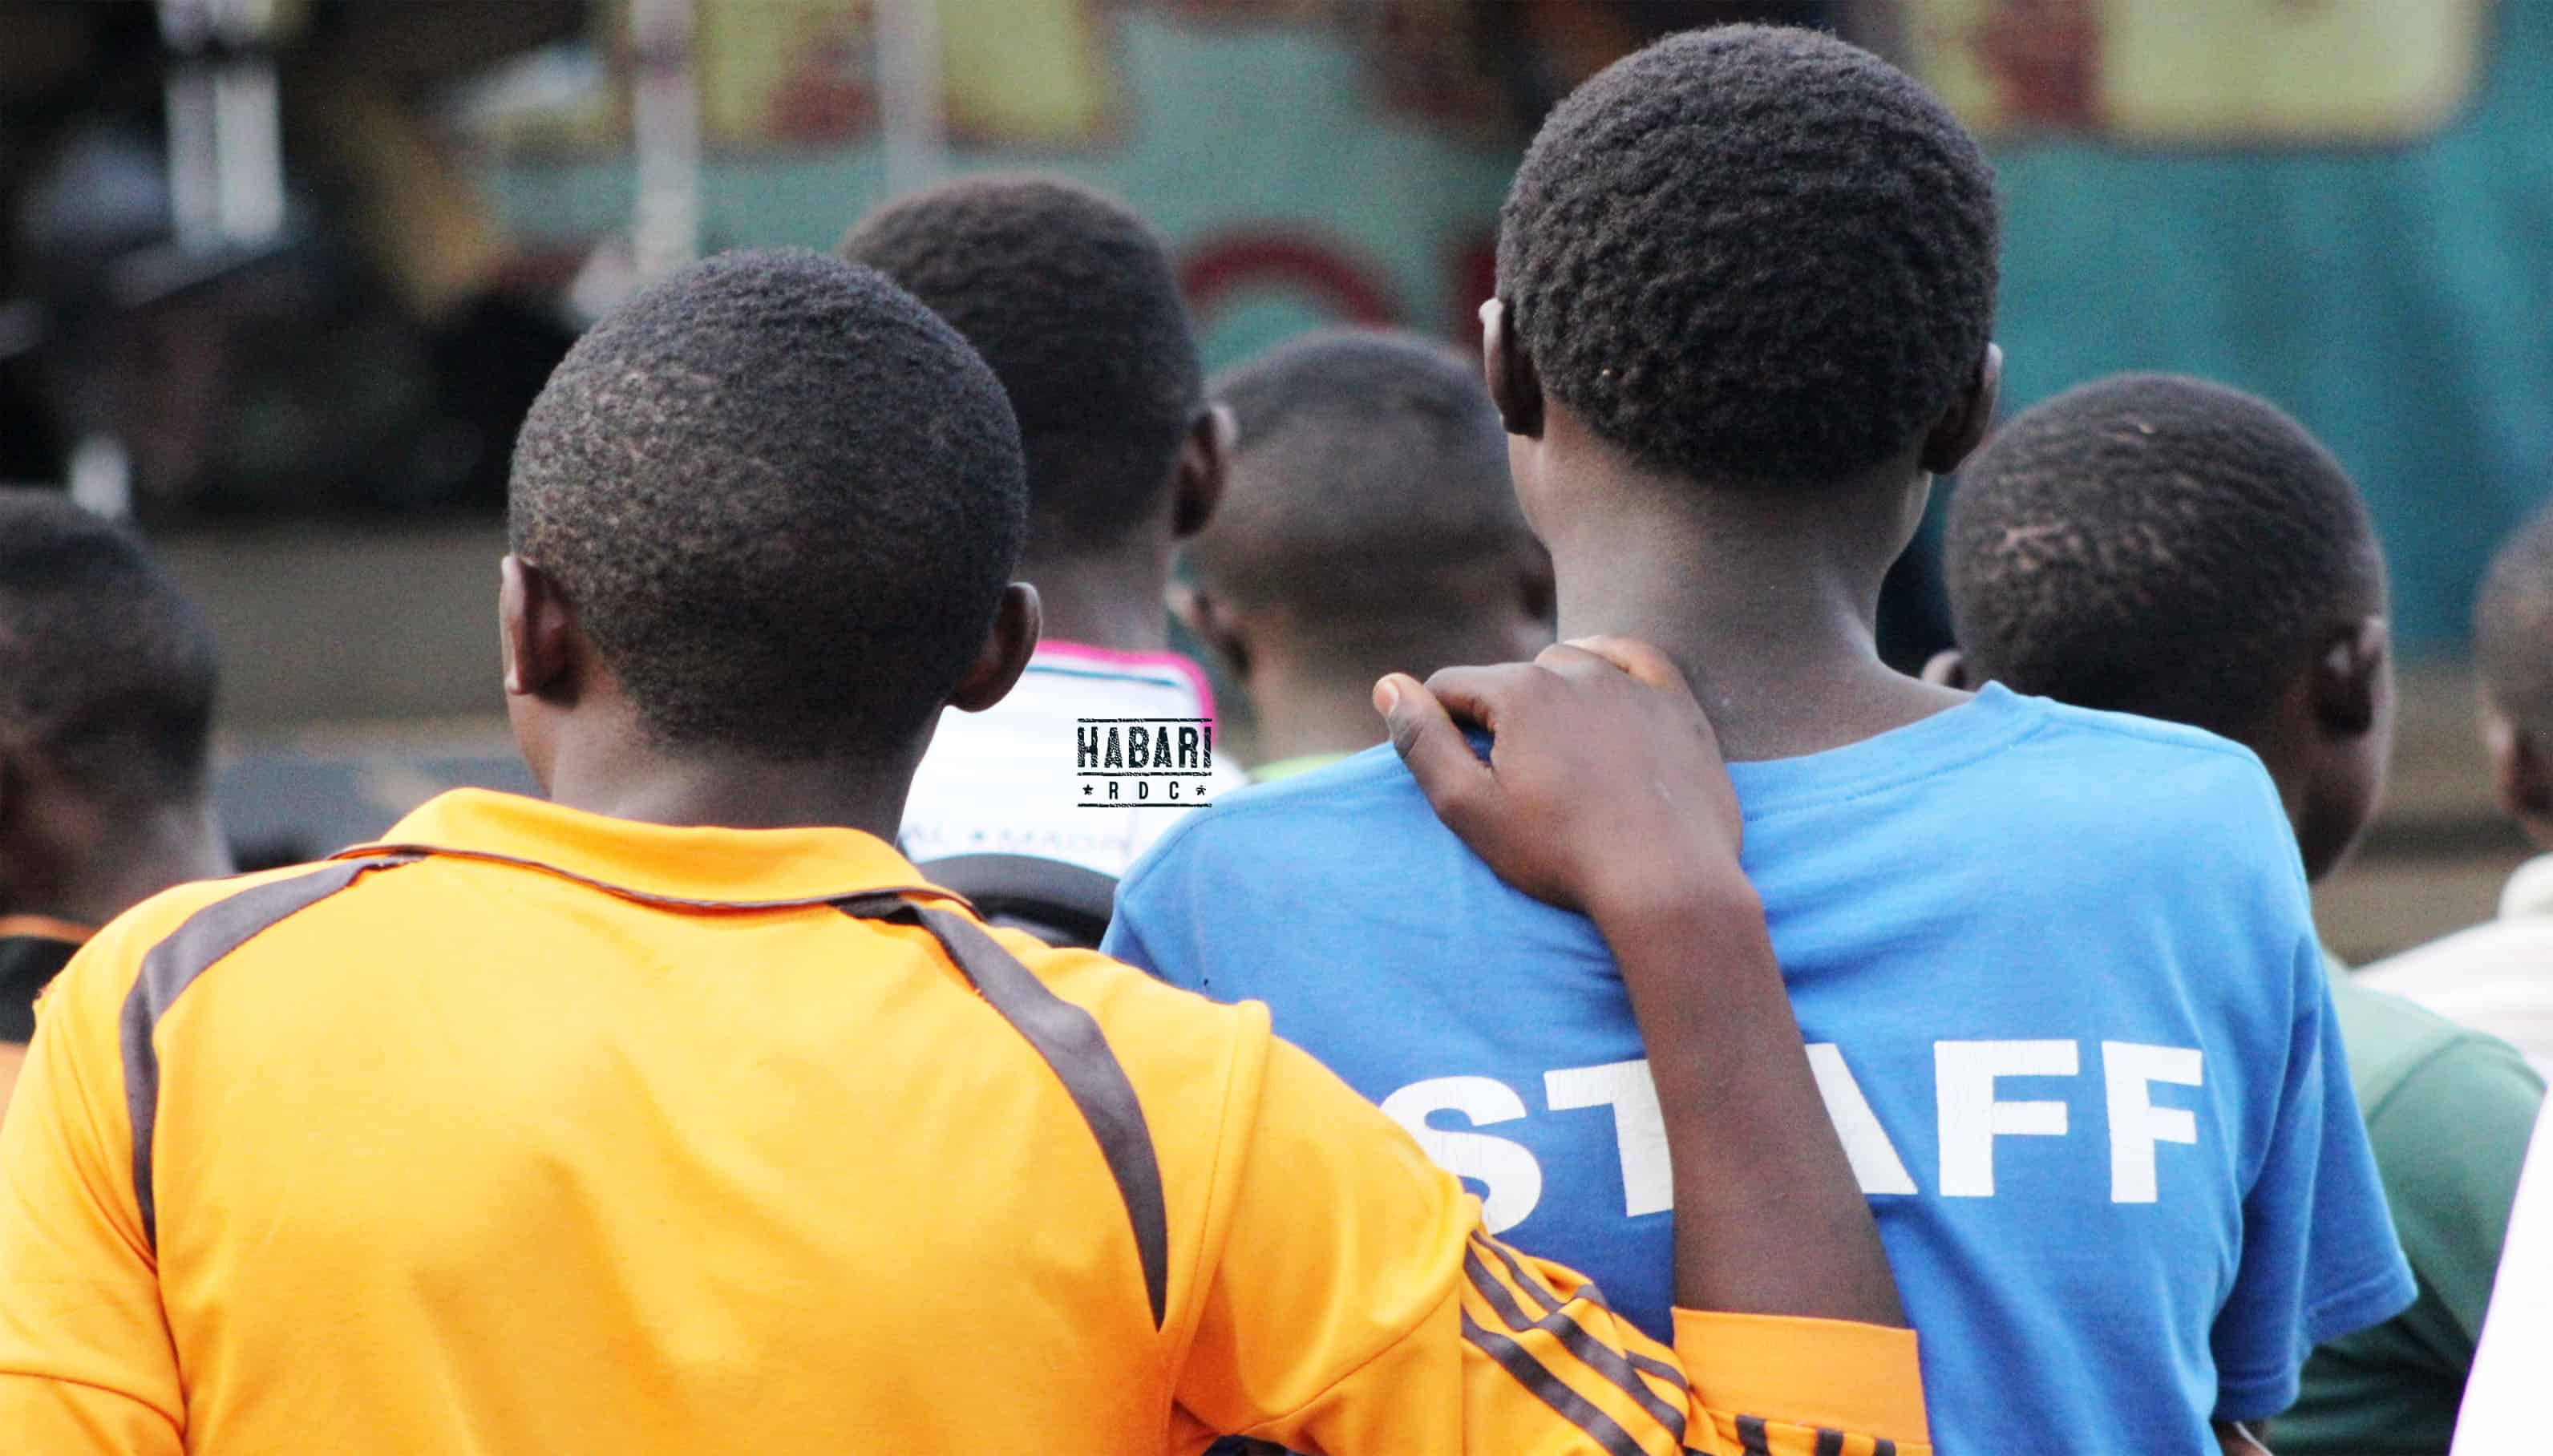 Grand-Katanga : les jeunes rejettent tout discours de haine entre communautés ethniques